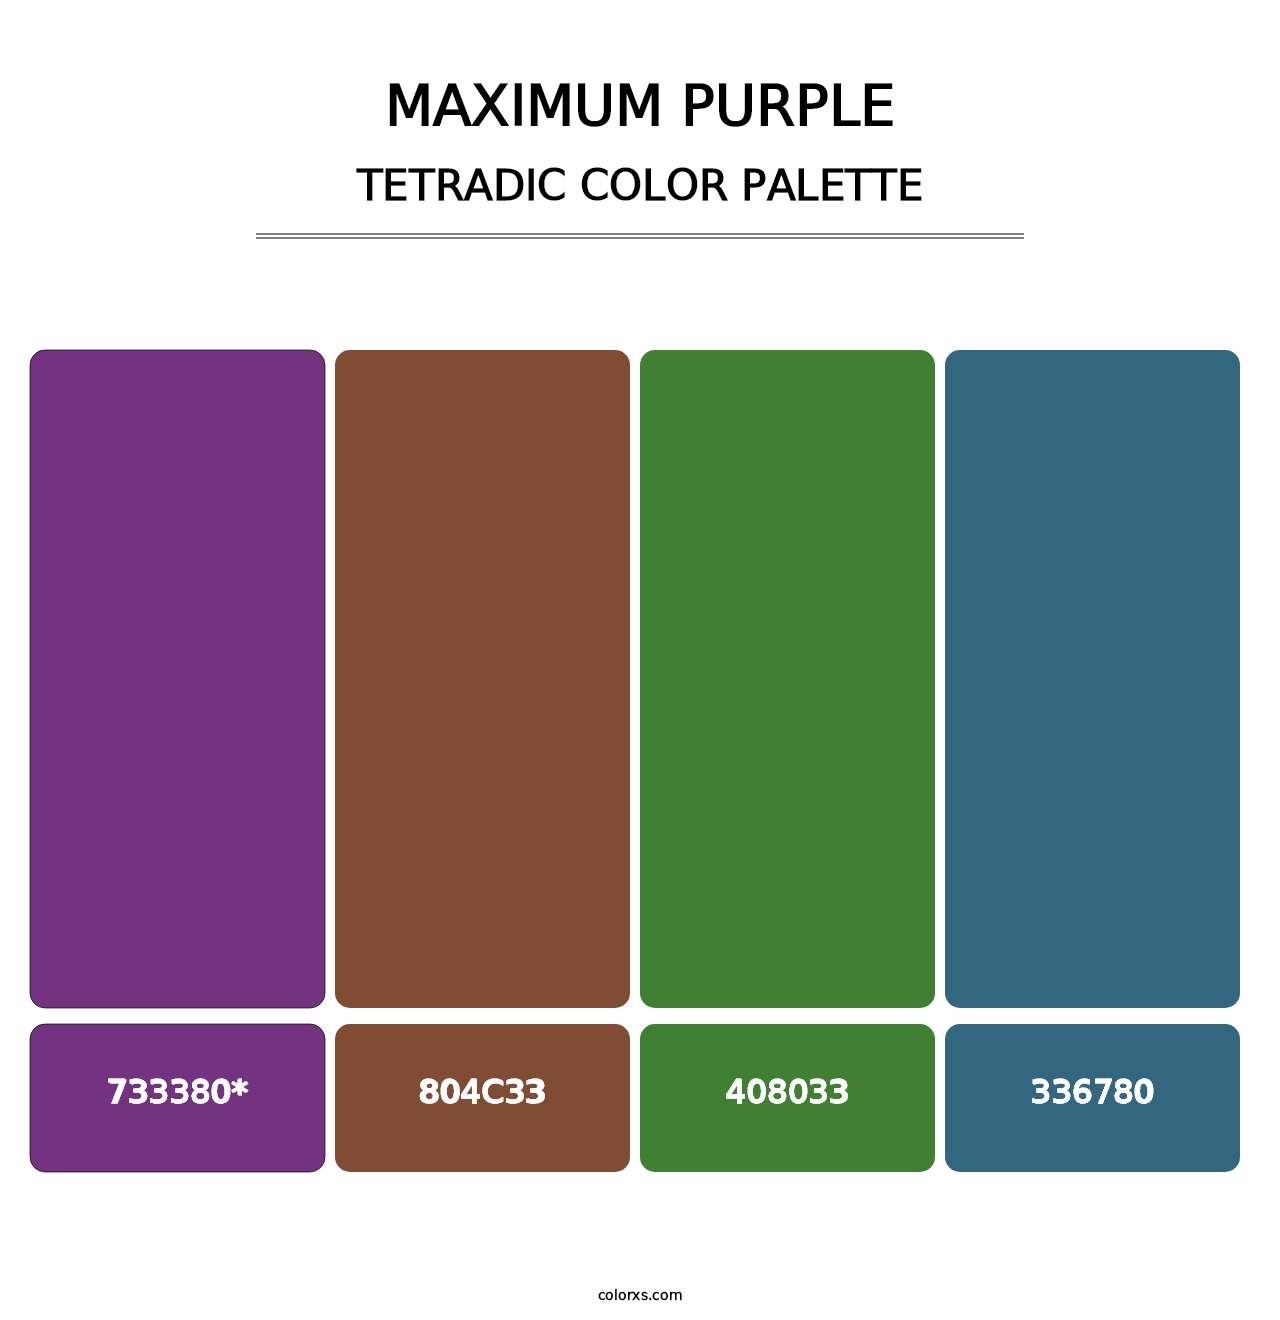 Maximum Purple - Tetradic Color Palette